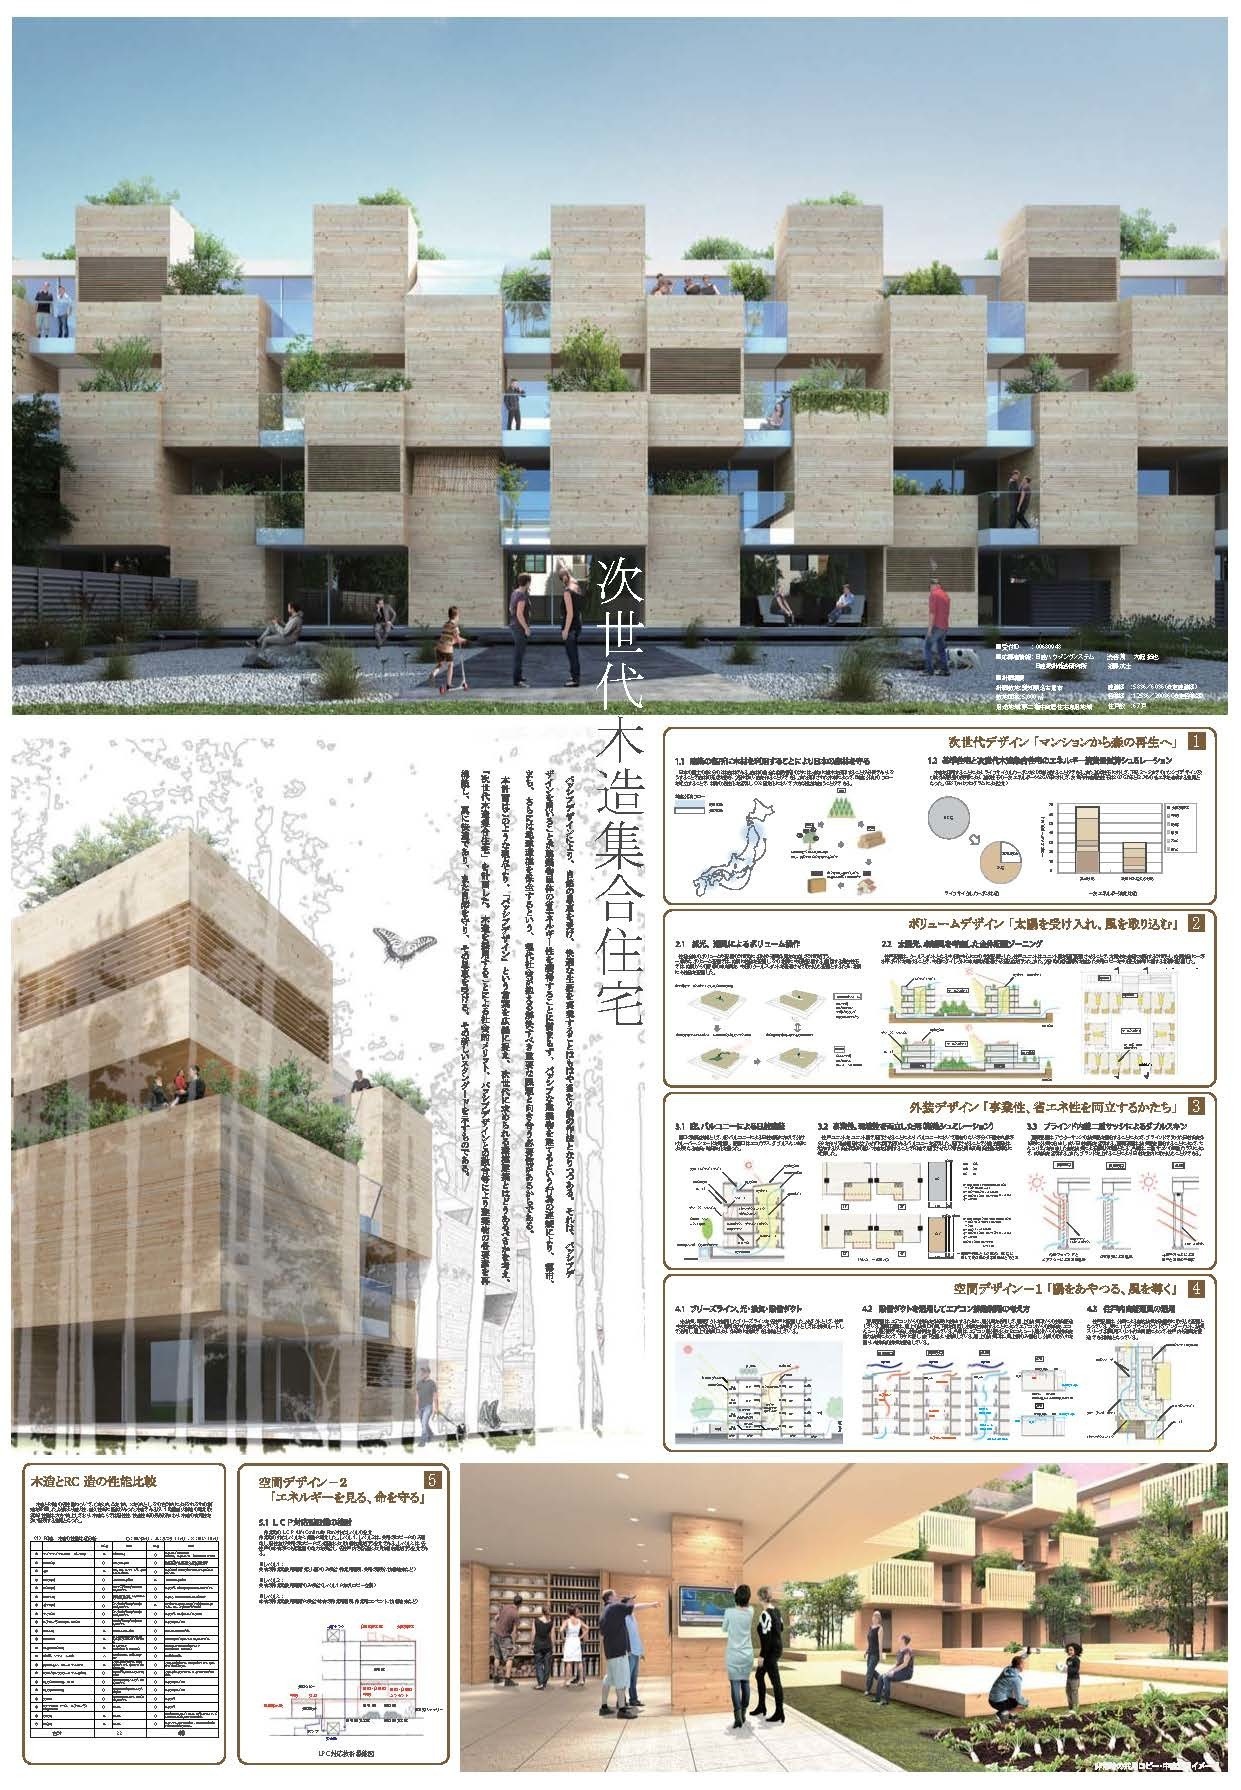 都市 建築の木質化にまつわるアイデア集 大庭 拓也 Note